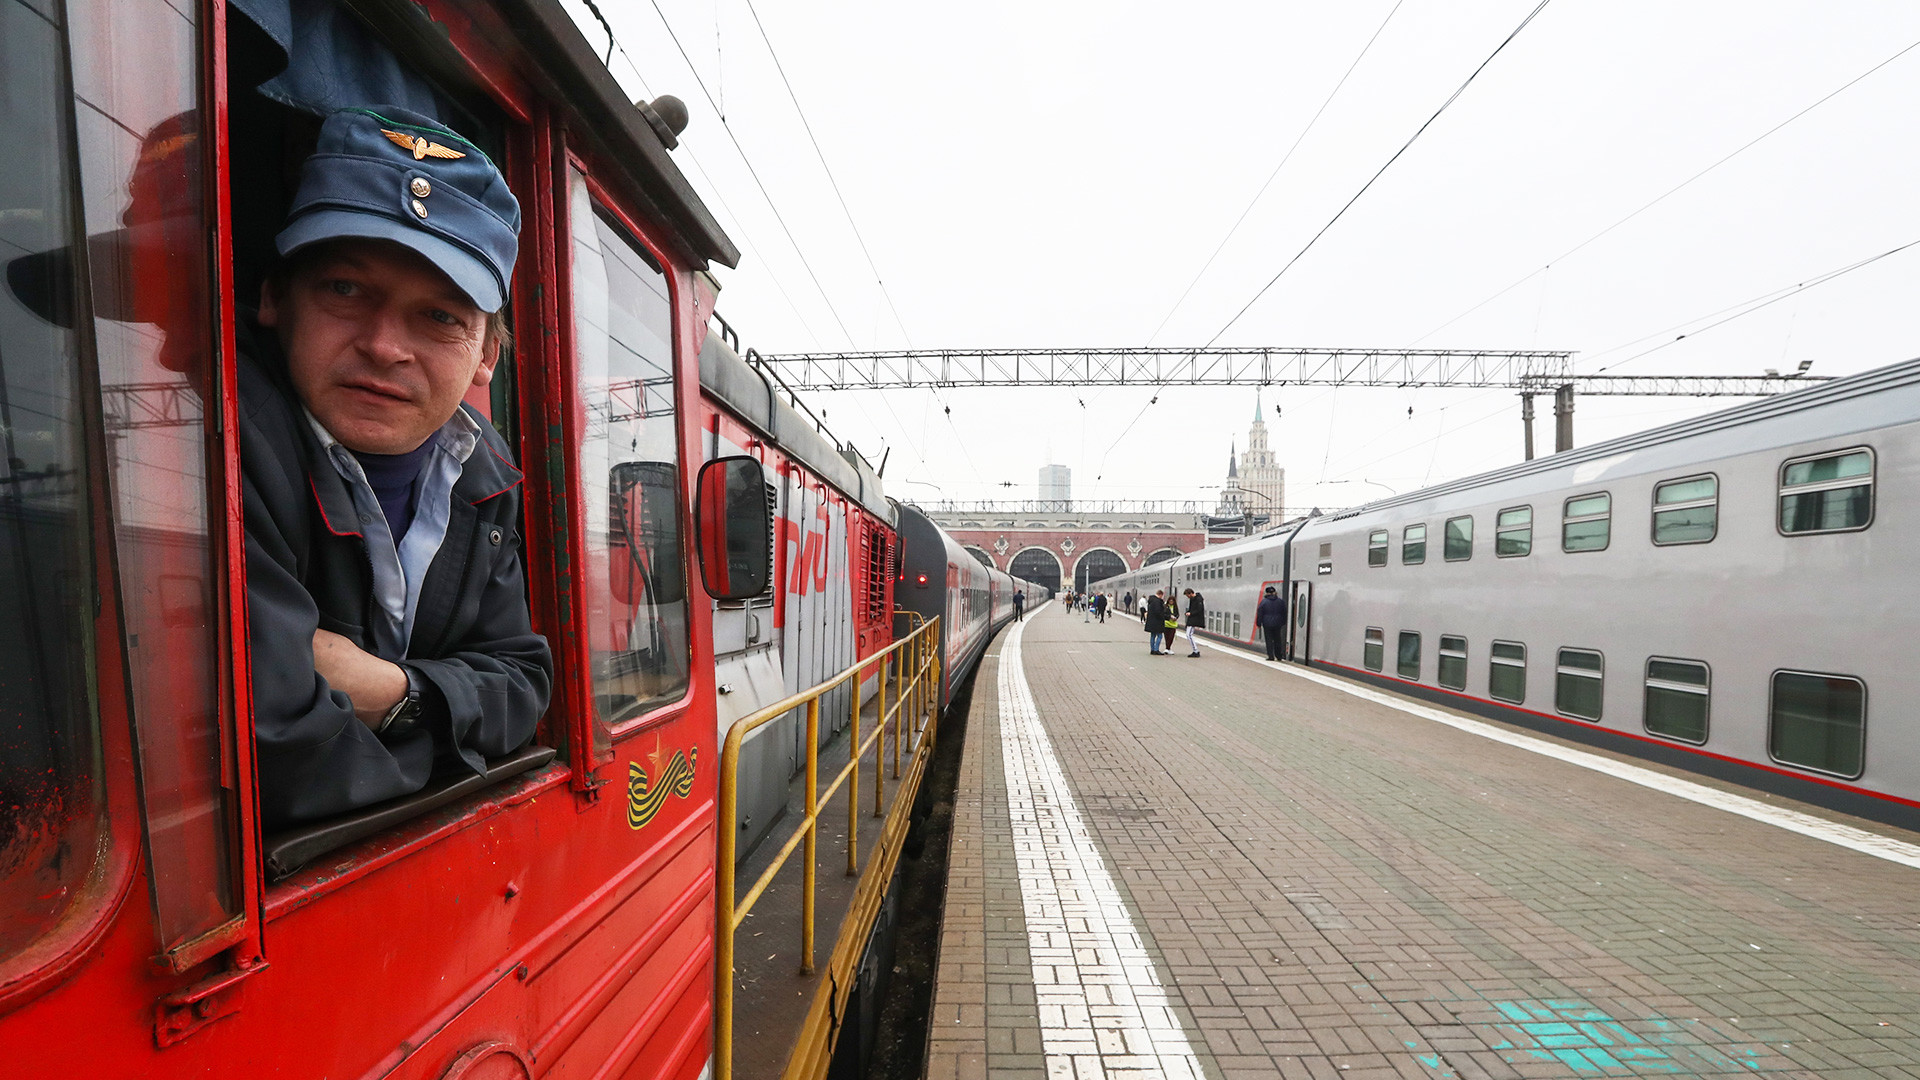 Le train qui assurera la liaison baptisée "Tavria" ("Tauride", nom antique de la Crimée), en gare de Kazan, à Moscou.